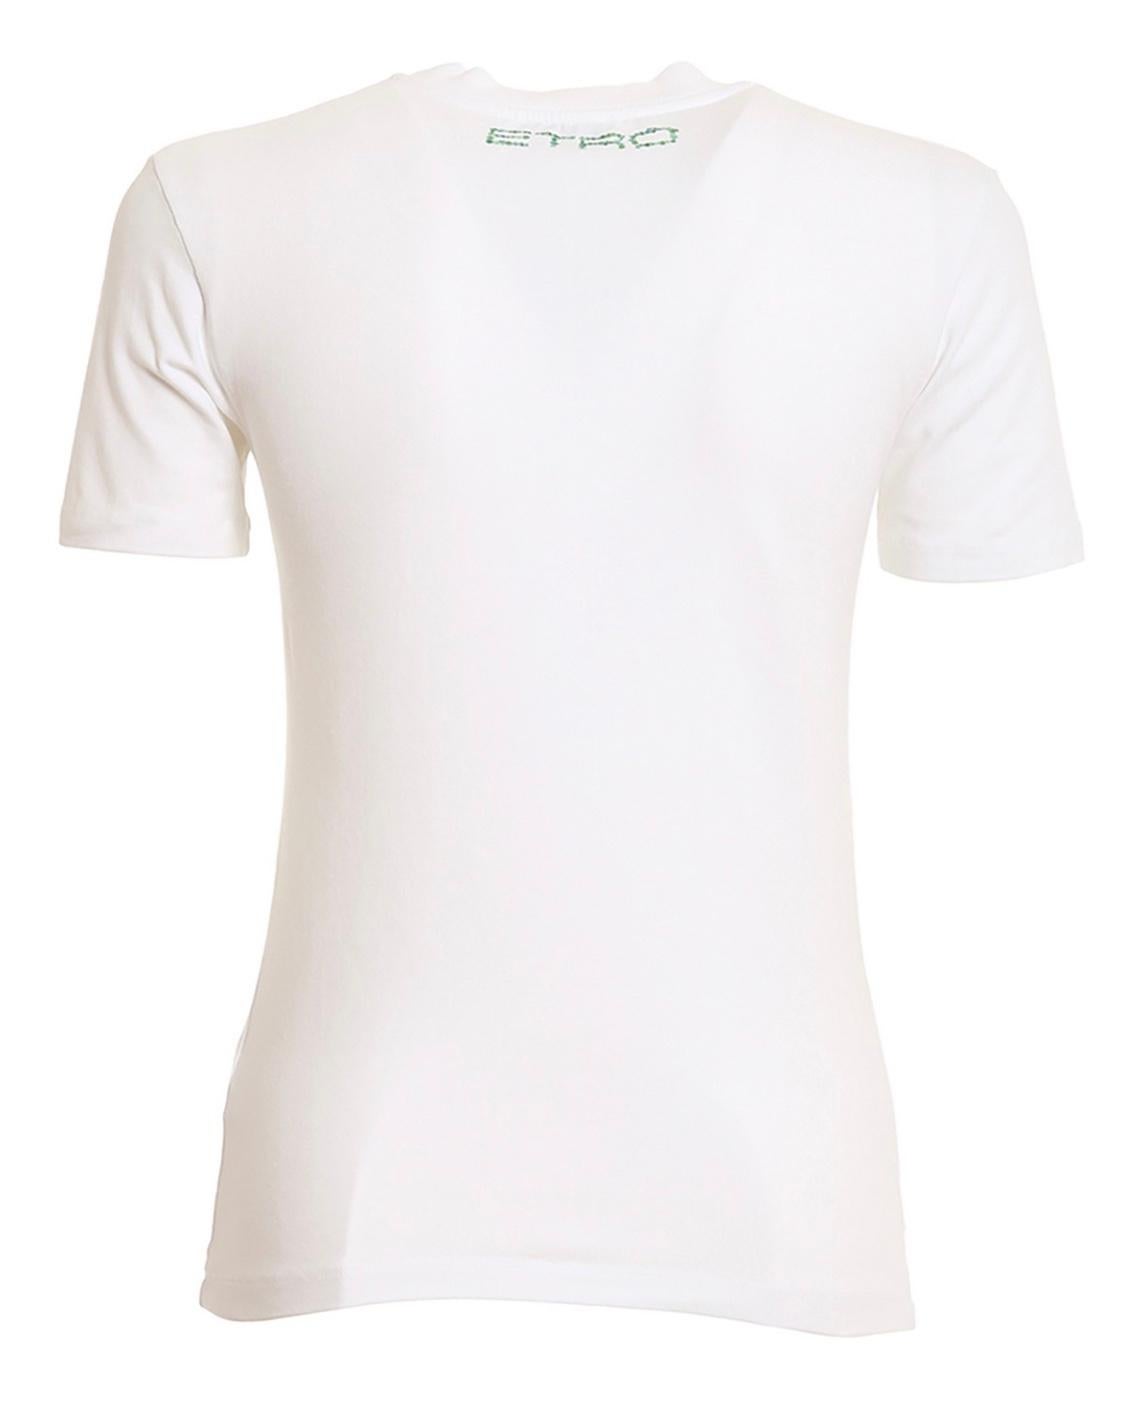 T-shirt graphique AT&T avec motif de mandala vert sur le devant. Coupé dans un coton extensible, ce vêtement de tous les jours est doté d'un col rond et de manches courtes.
90% coton, 10% élasthanne.
Fabriquées en Italie. 
Neuf, jamais porté, avec